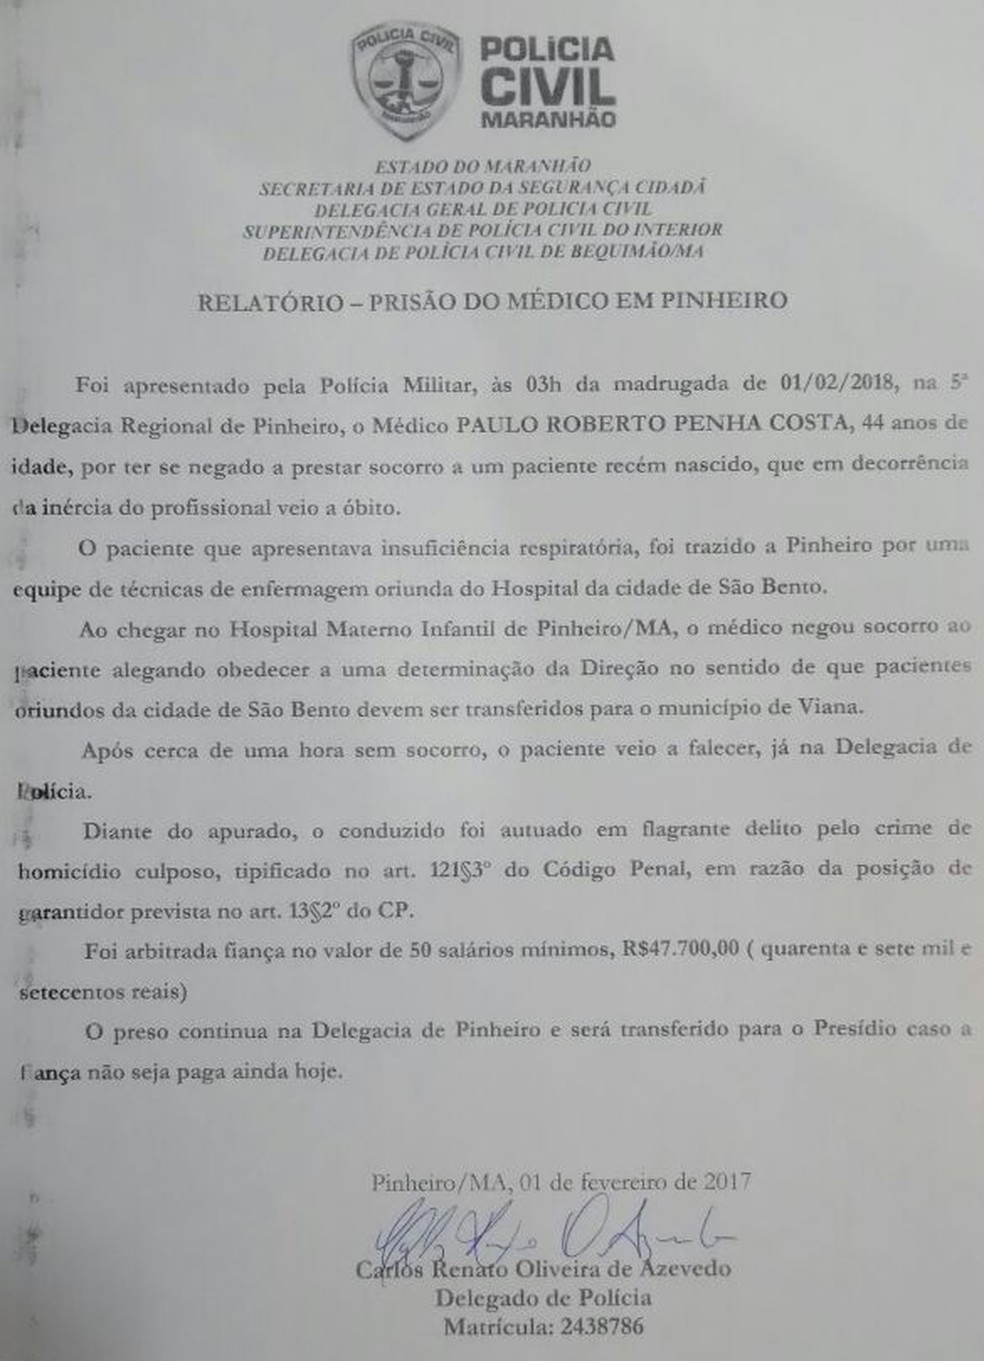 Para ser liberado, médico deverá pagar fiança correspondente a 50 salários mínimos. (Foto: Divulgação/Polícia Civil)